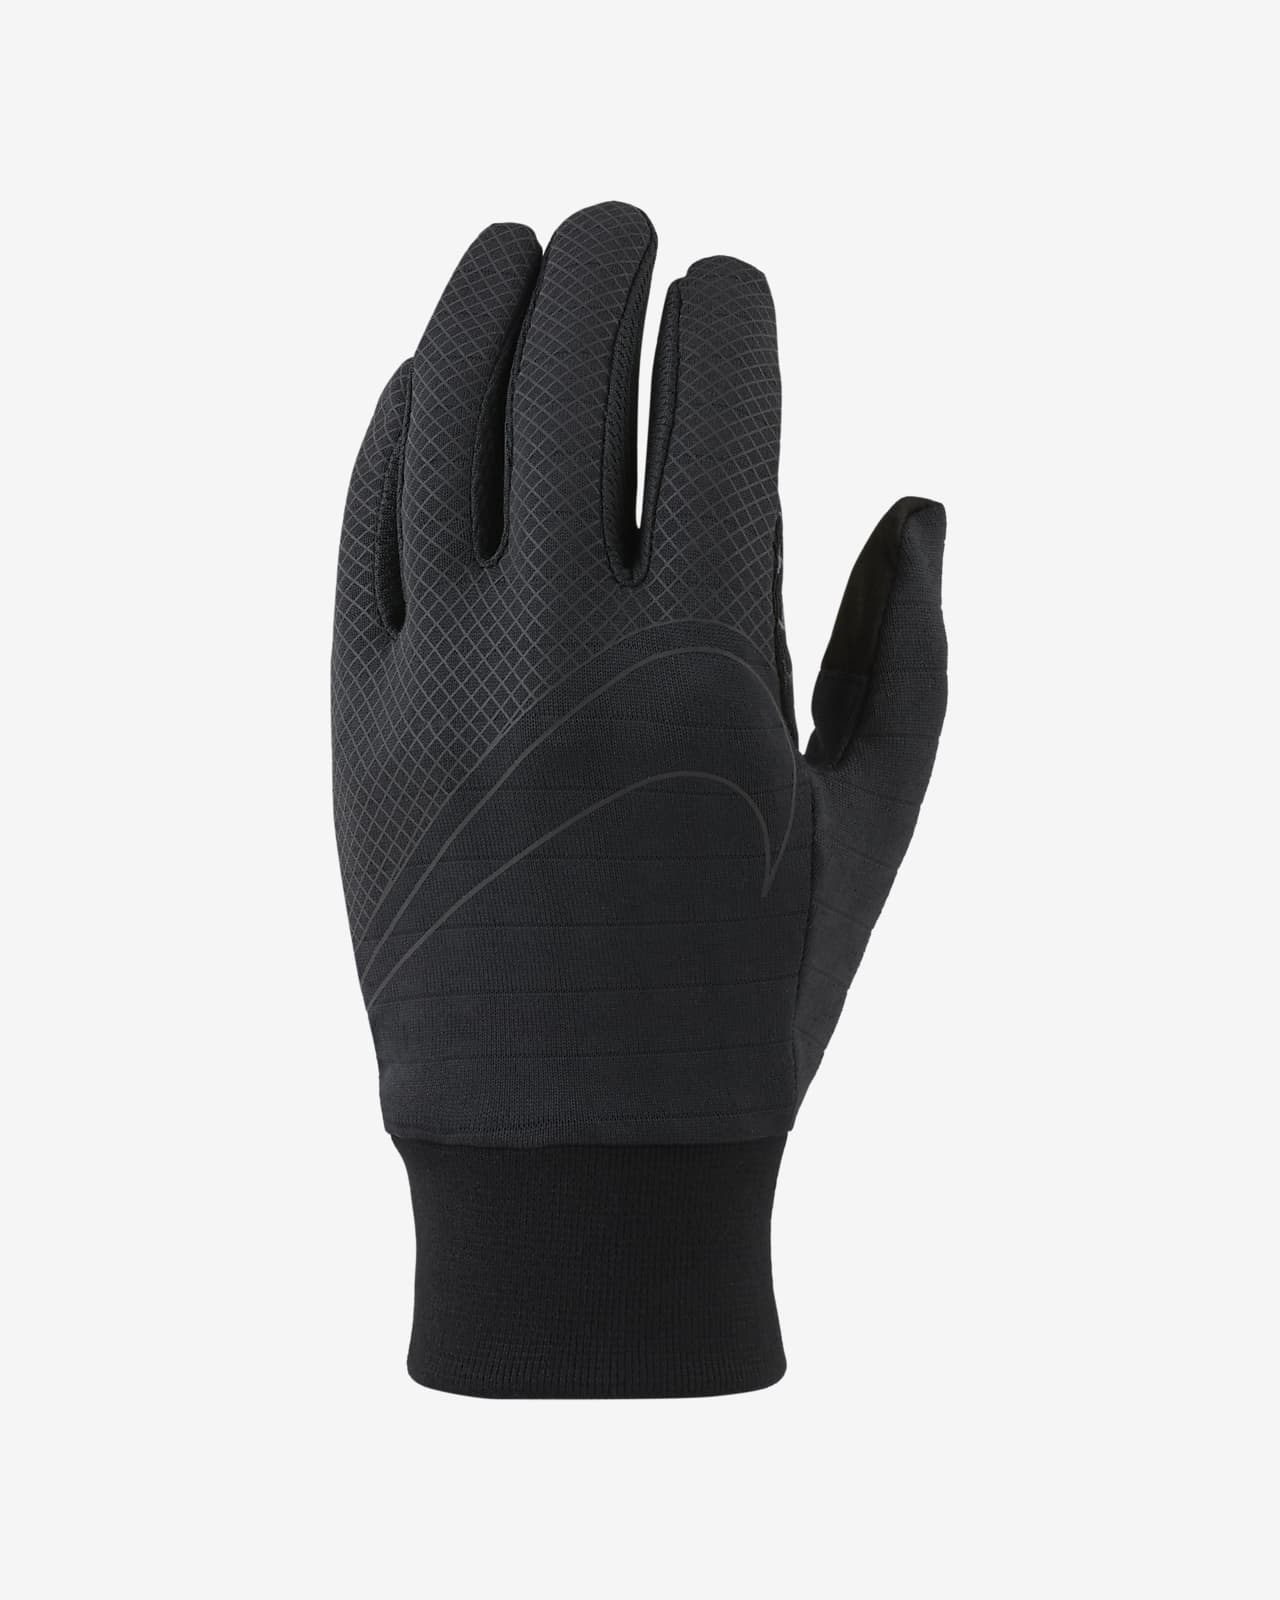 Nike Sphere 360 Men's Running Gloves